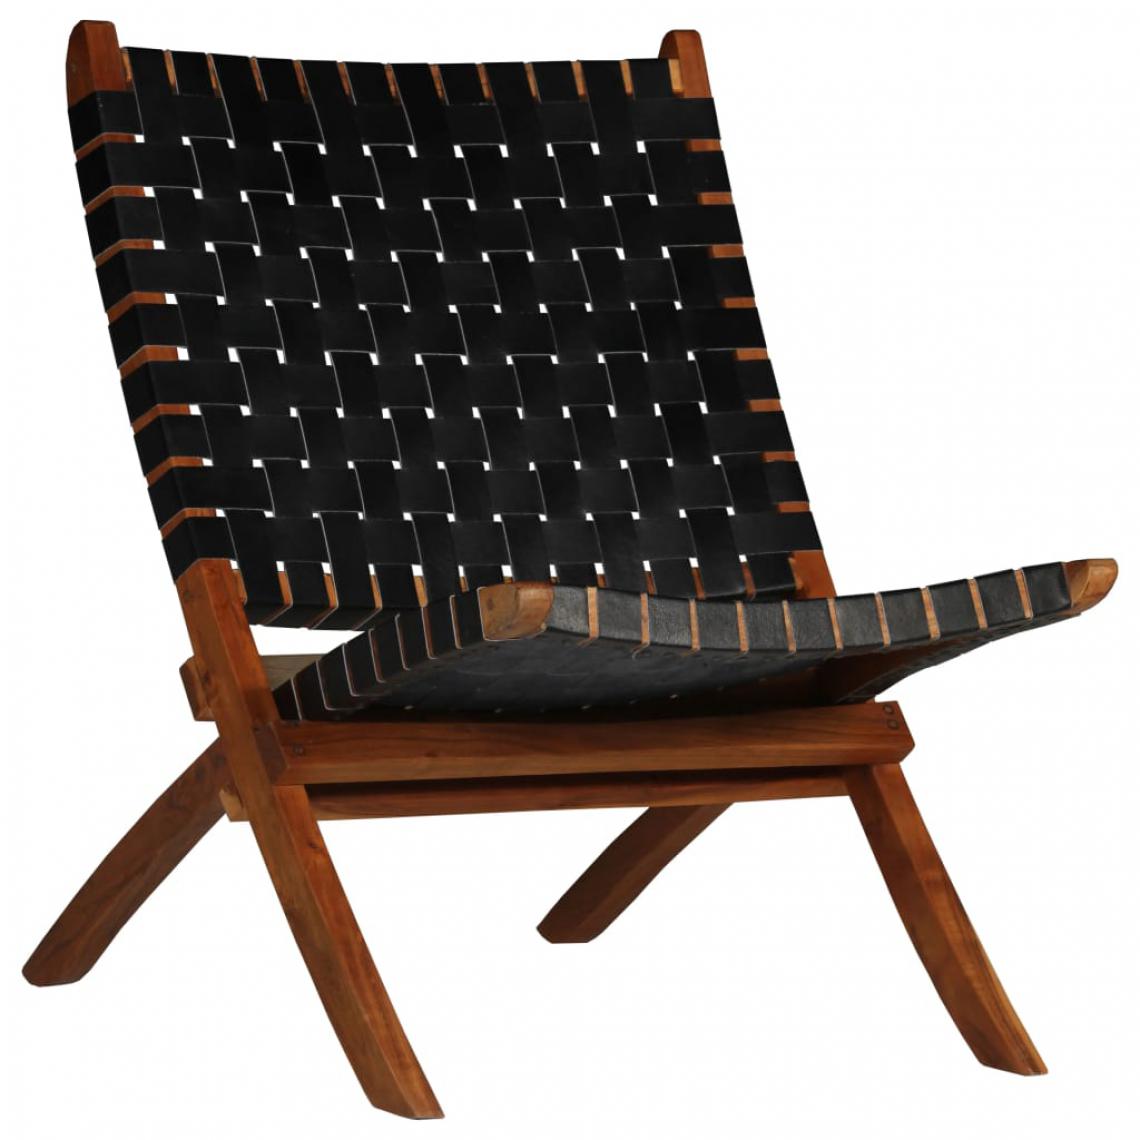 Icaverne - sublime Fauteuils categorie Tbilissi Chaise de relaxation Cuir véritable 59x72x79 cm Bandes Noir - Chaises